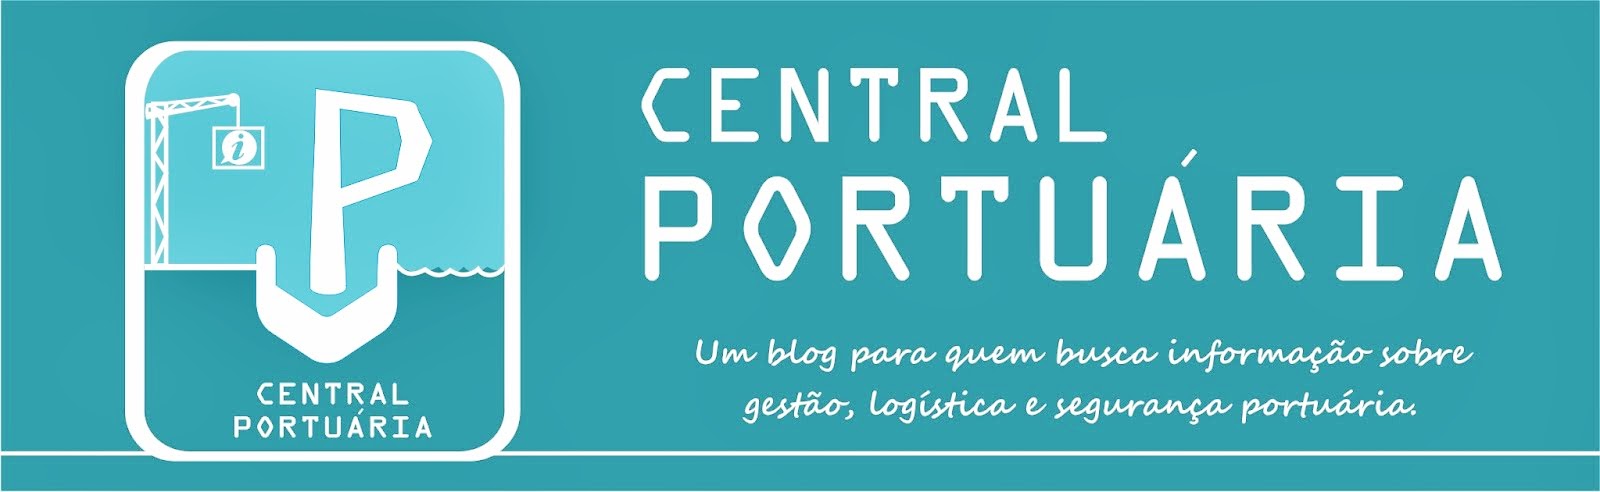 CENTRAL PORTUÁRIA